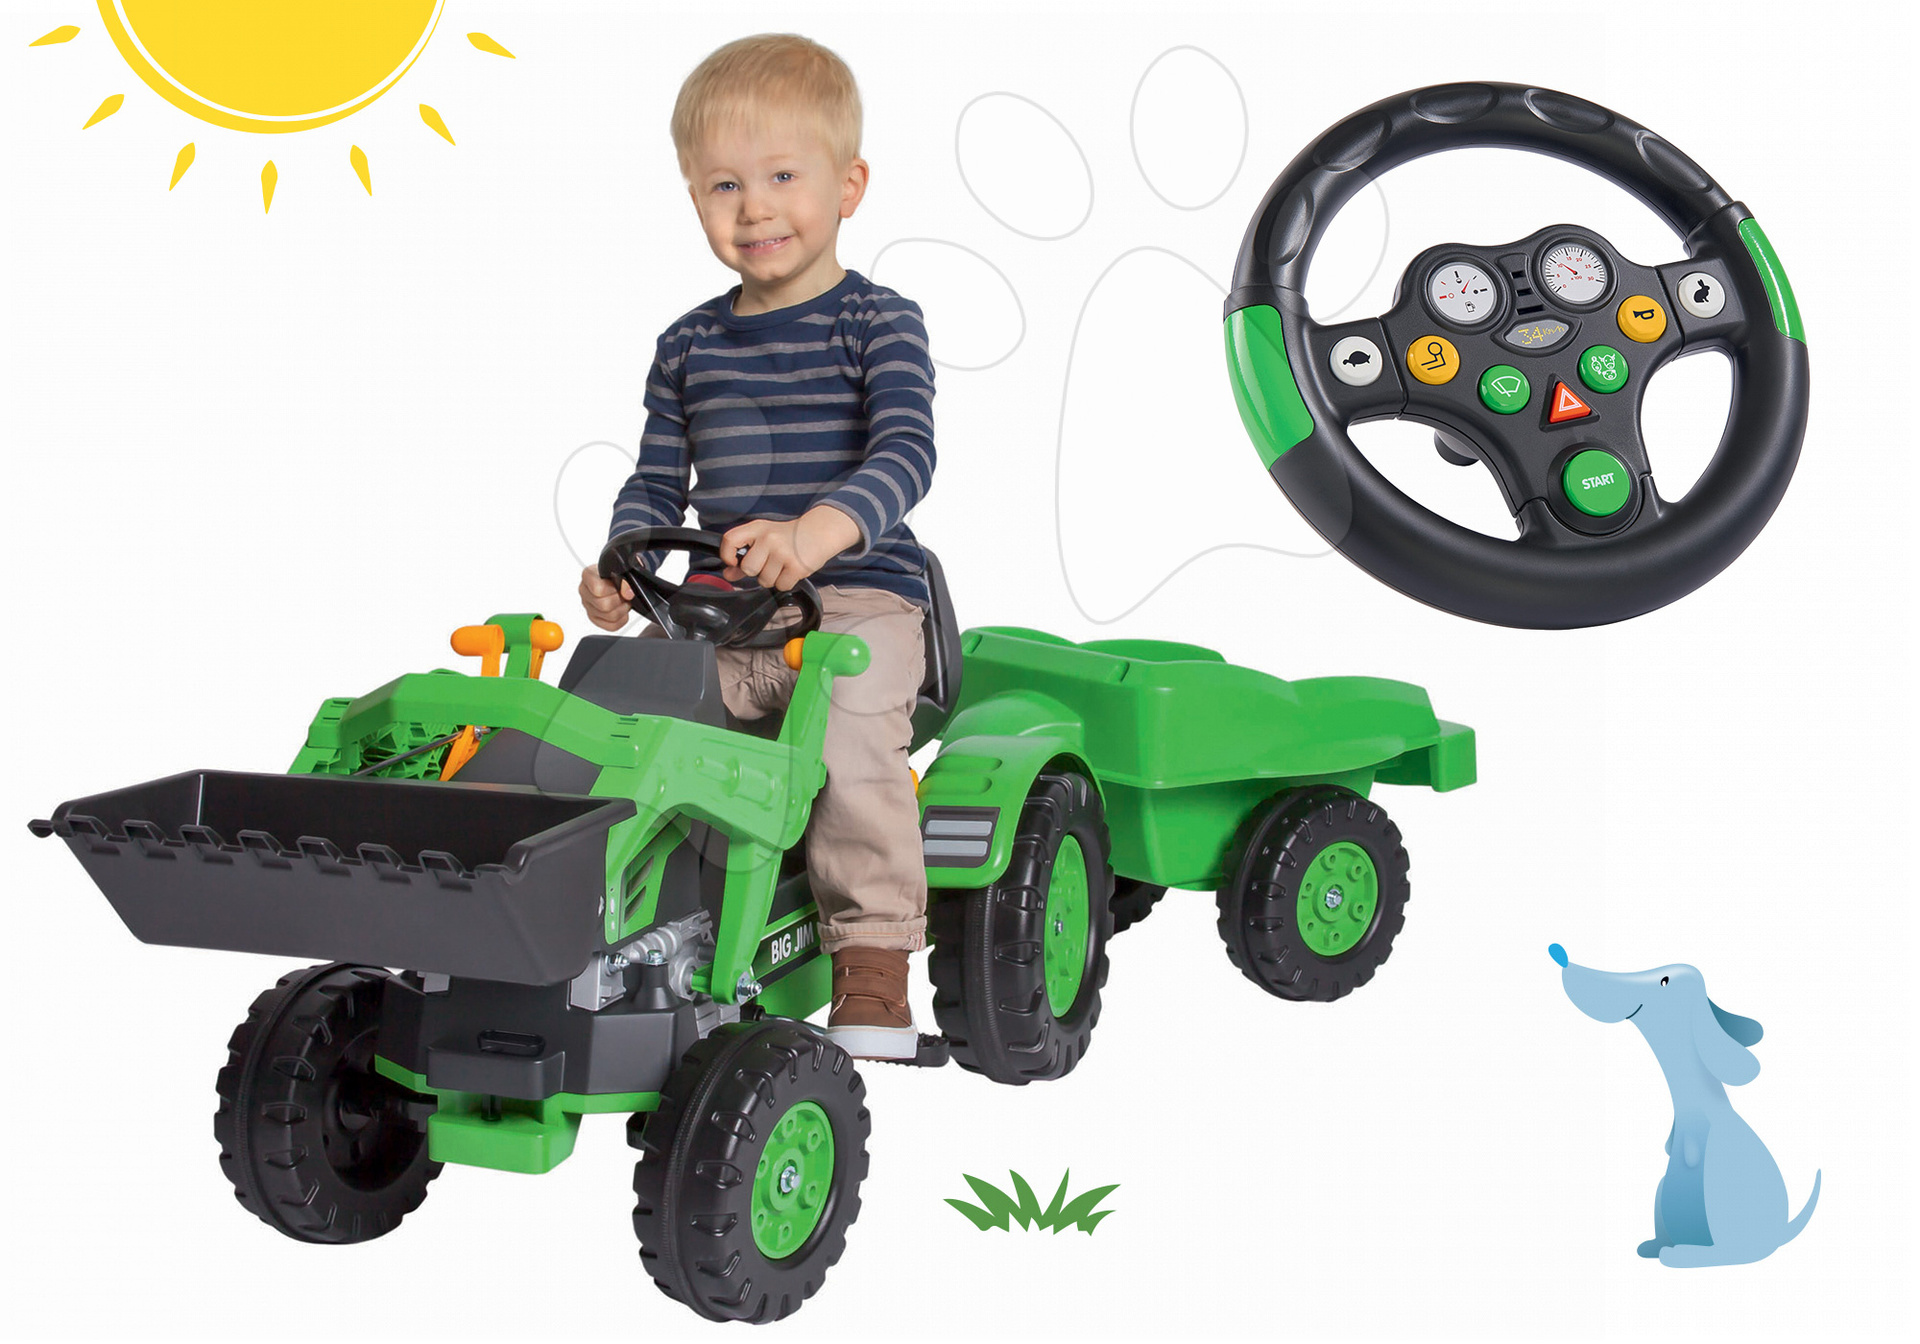 Otroška vozila na pedala - Komplet traktor na pedala Jim Loader BIG z bagrom in prikolico ter interaktivni volan z zvokom in lučko